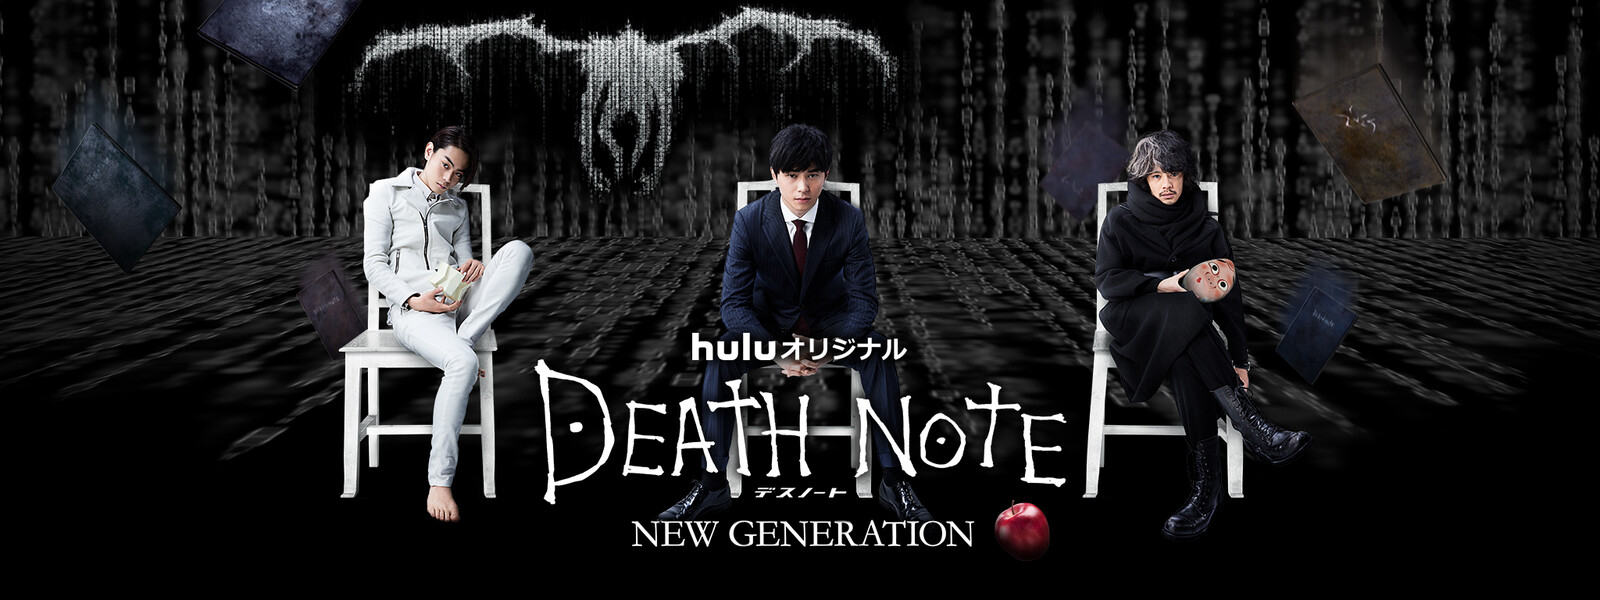 DEATH NOTE デスノート NEW GENERATIONの動画 - L change the WorLd